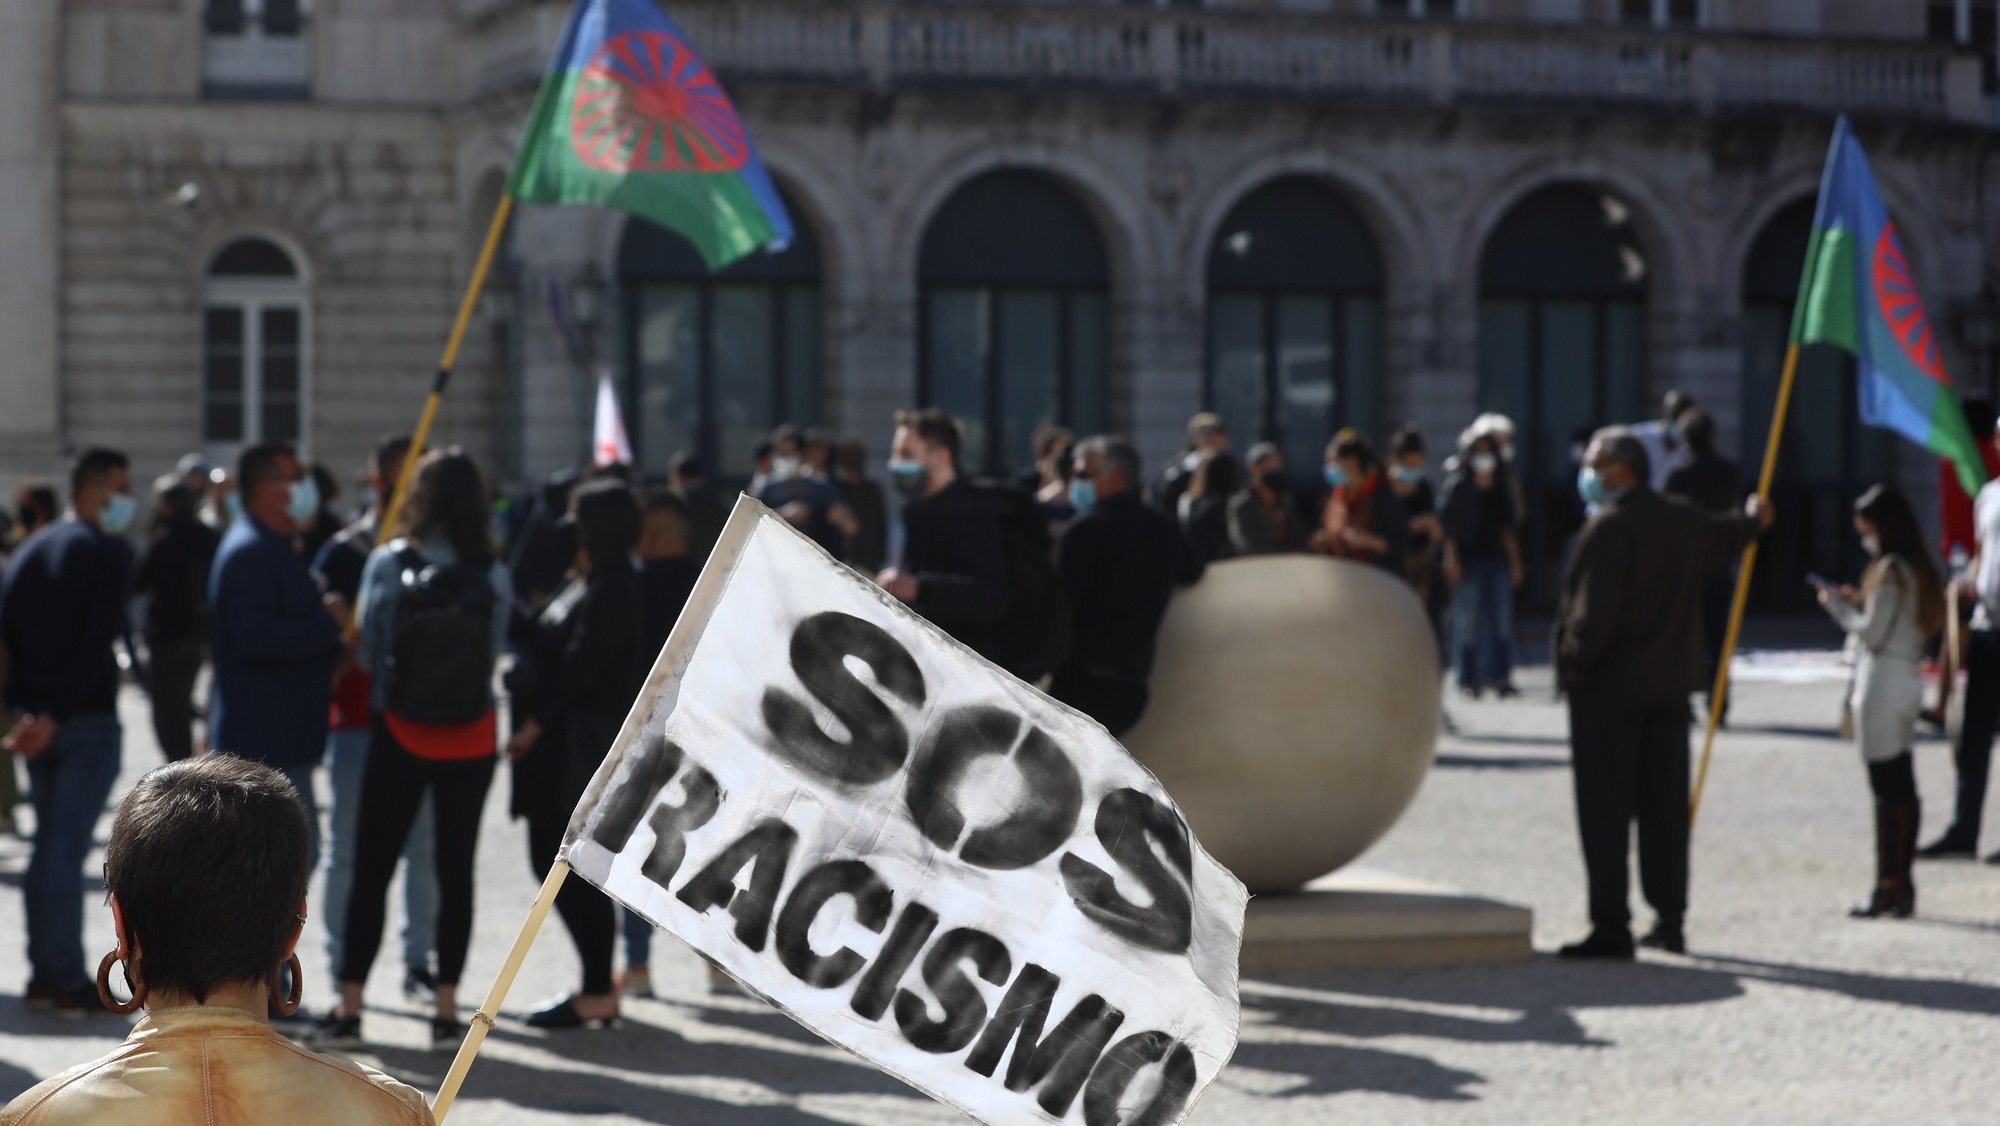 Manifestantes protestam no âmbito do Dia Internacional pela Eliminação da Discriminação Racial contra a exploração laboral, a violência policial, a segregação escolar, a segregação habitacional e os despejos, com a participação de várias organizações ativistas. em Lisboa, 21 de março de 2021. ANTÓNIO COTRIM/LUSA